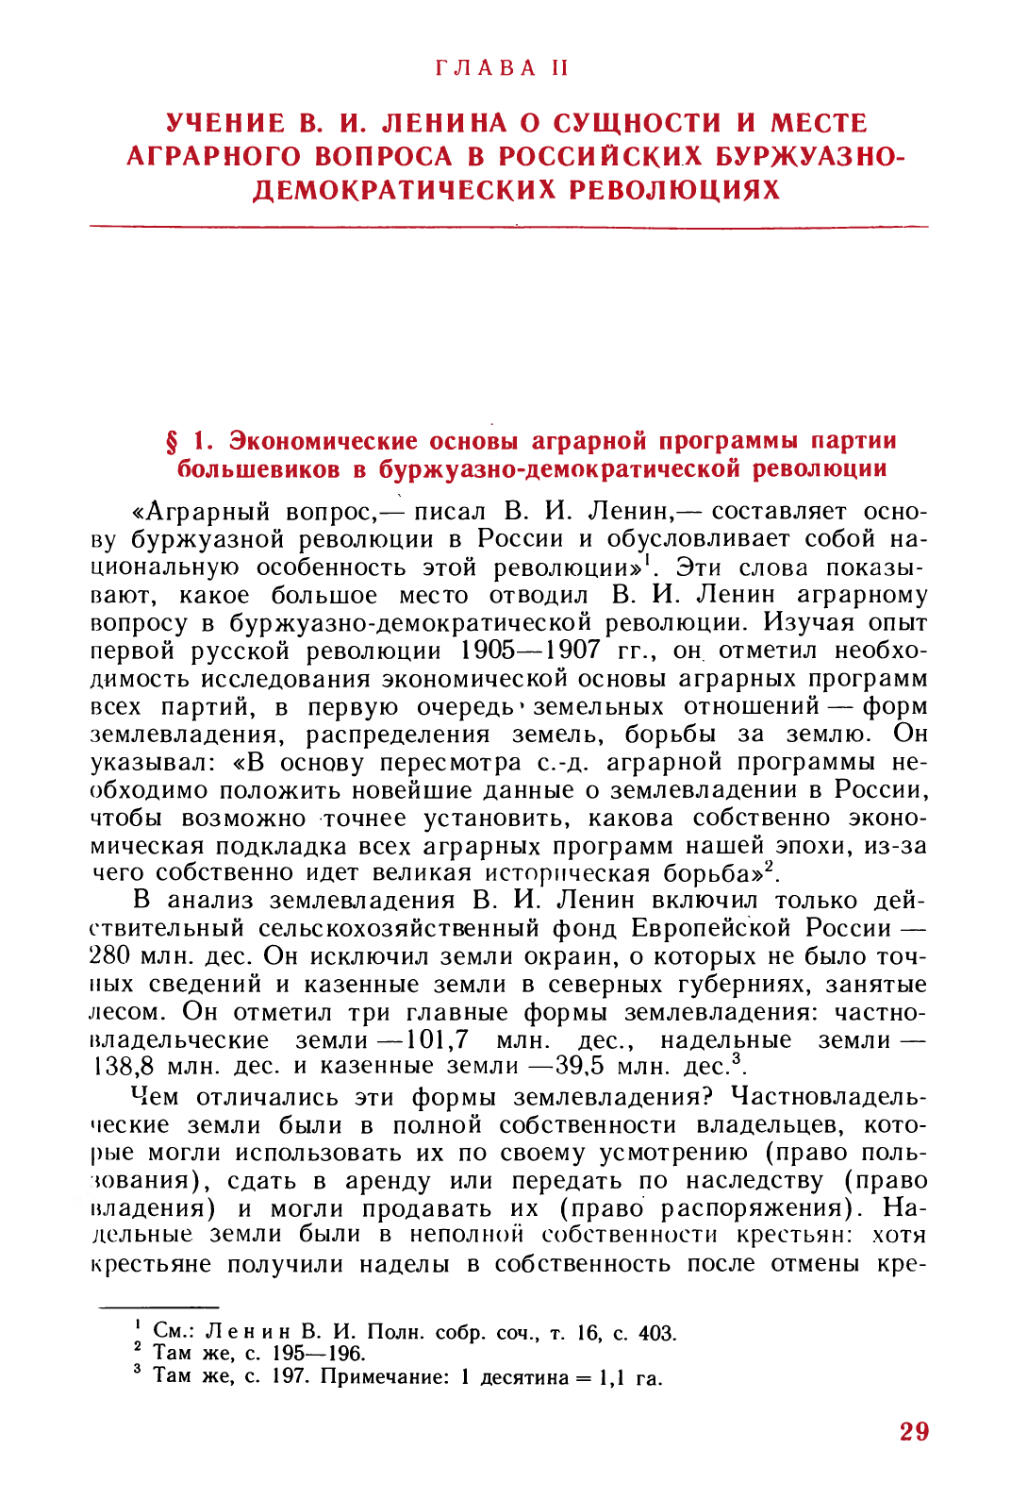 Глава II. Учение В. И. Ленина о сущности и месте аграрного вопроса в российских буржуазно-демократических революциях